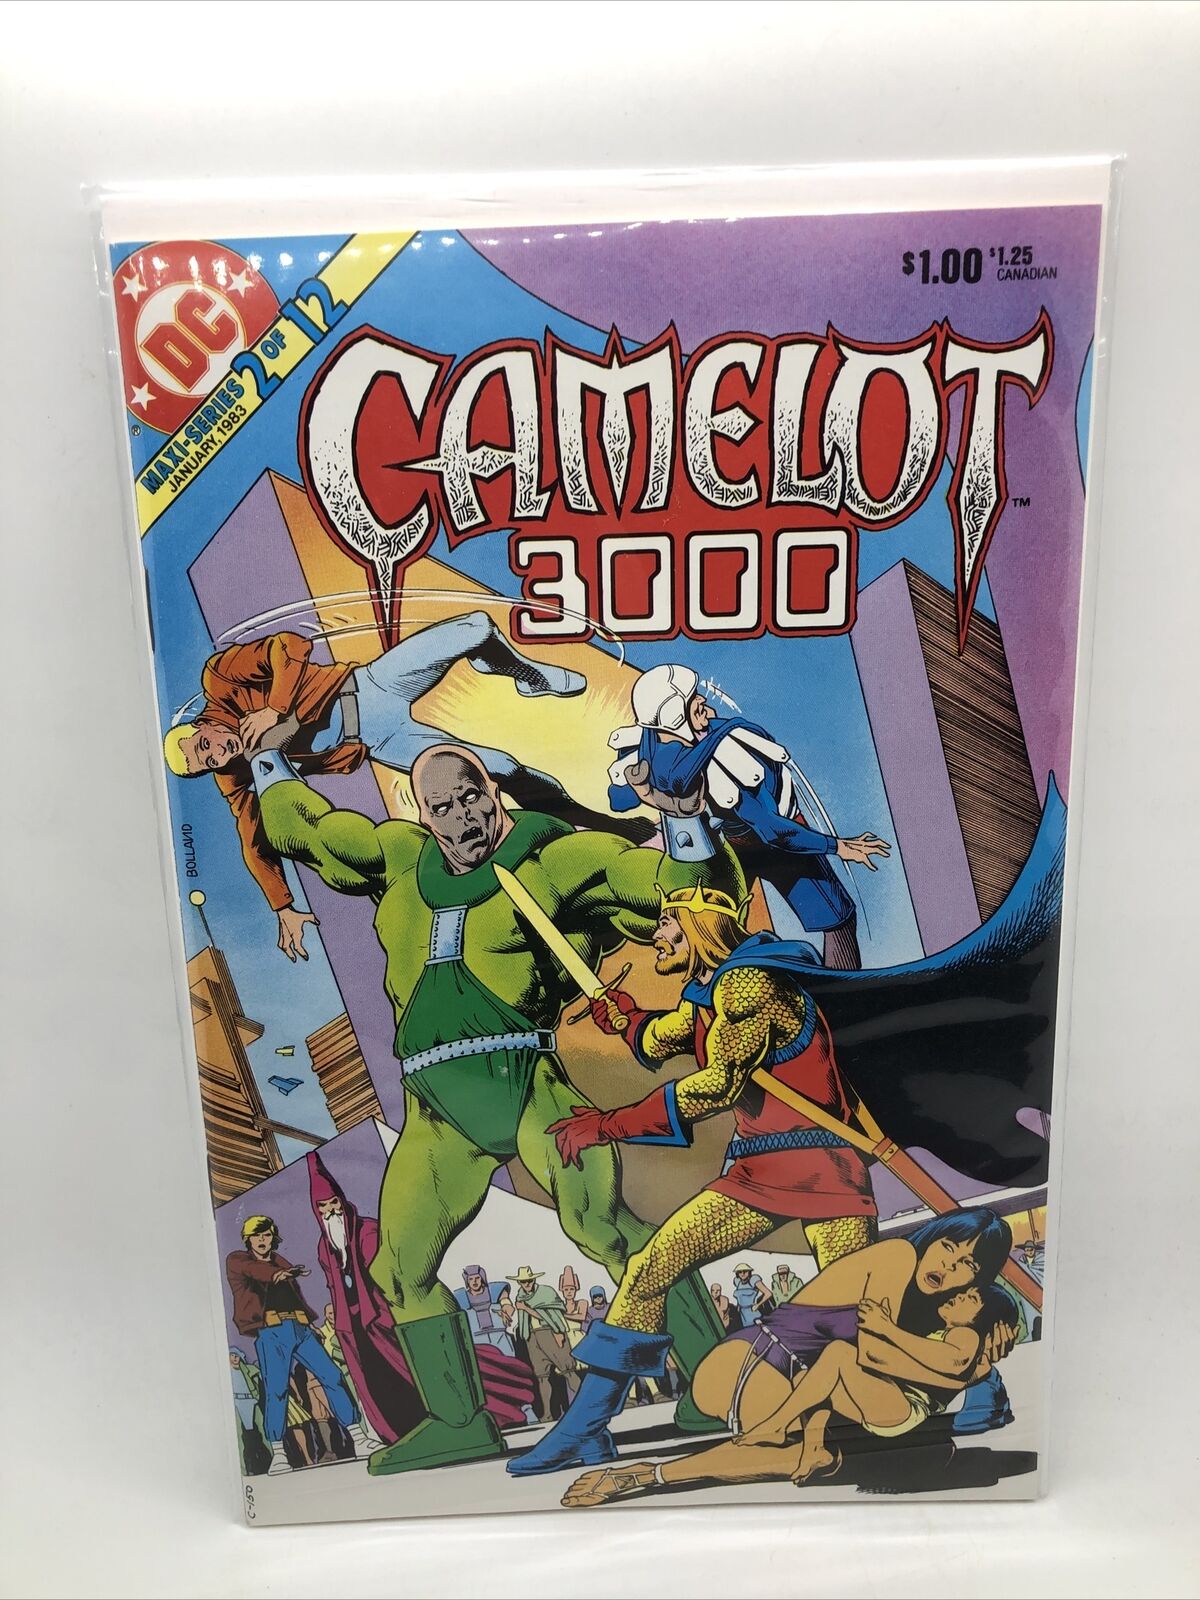 Camelot 3000 #2 DC Comics Bronze Age sci-fi fantasy Brian Bolland